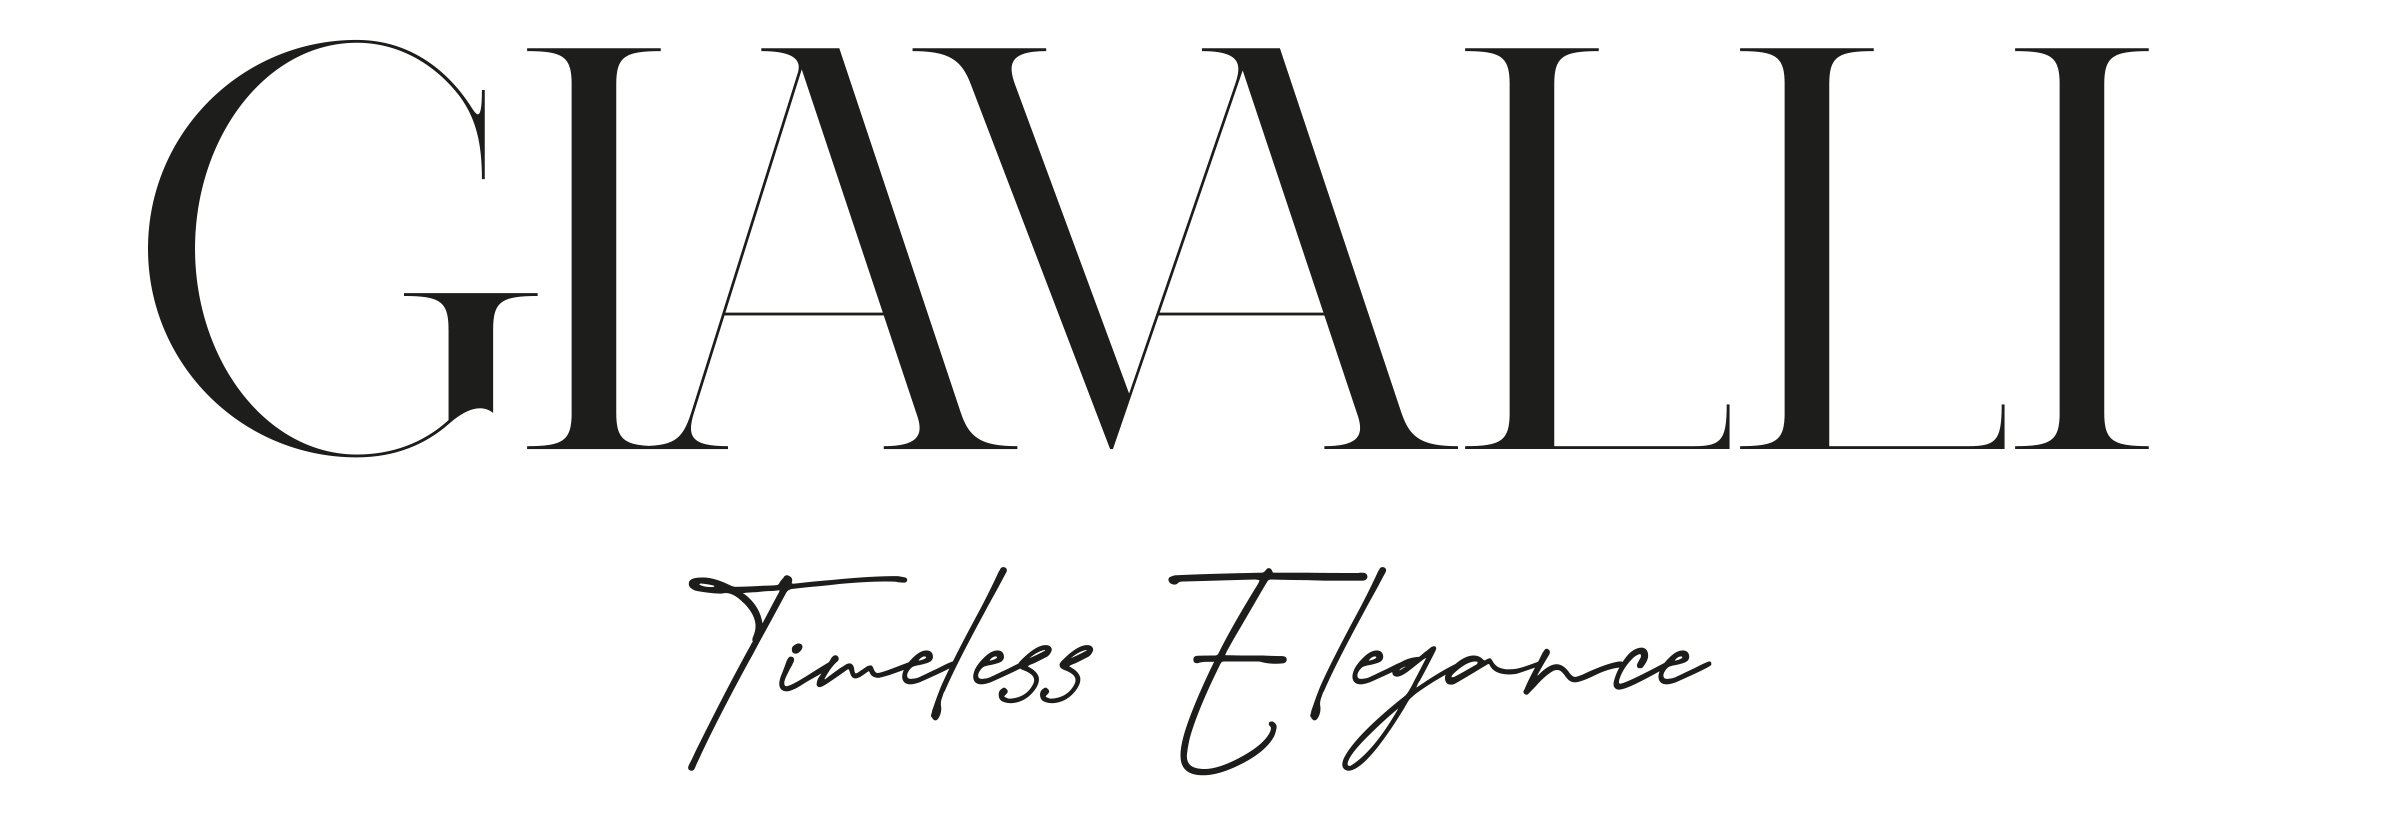 Giavalli Timeless Elegance Logo White